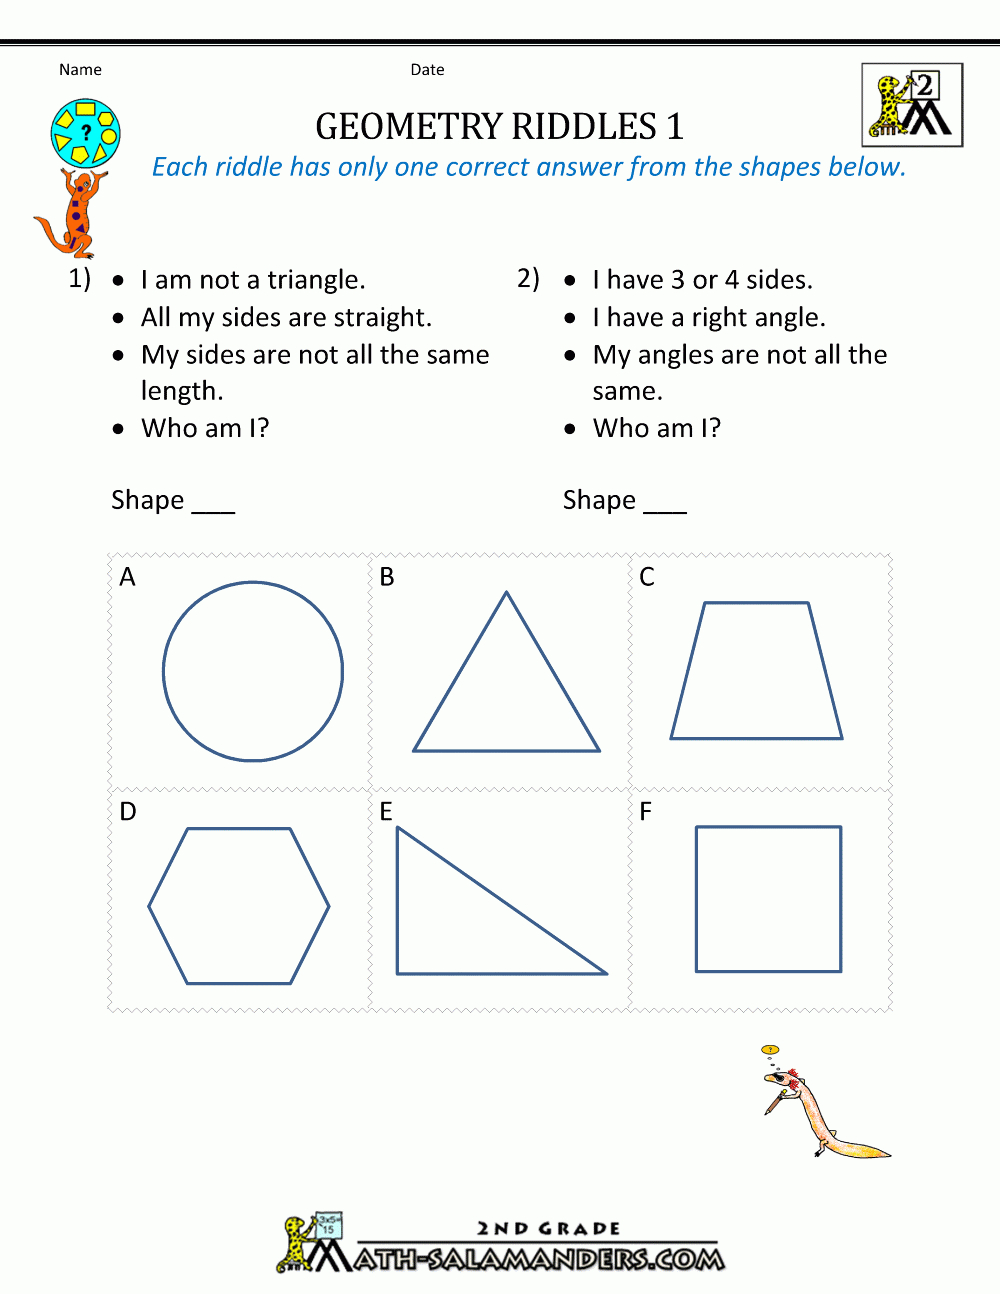 Free Geometry Worksheets 2Nd Grade Geometry Riddles - Free Printable Geometry Worksheets For 3Rd Grade